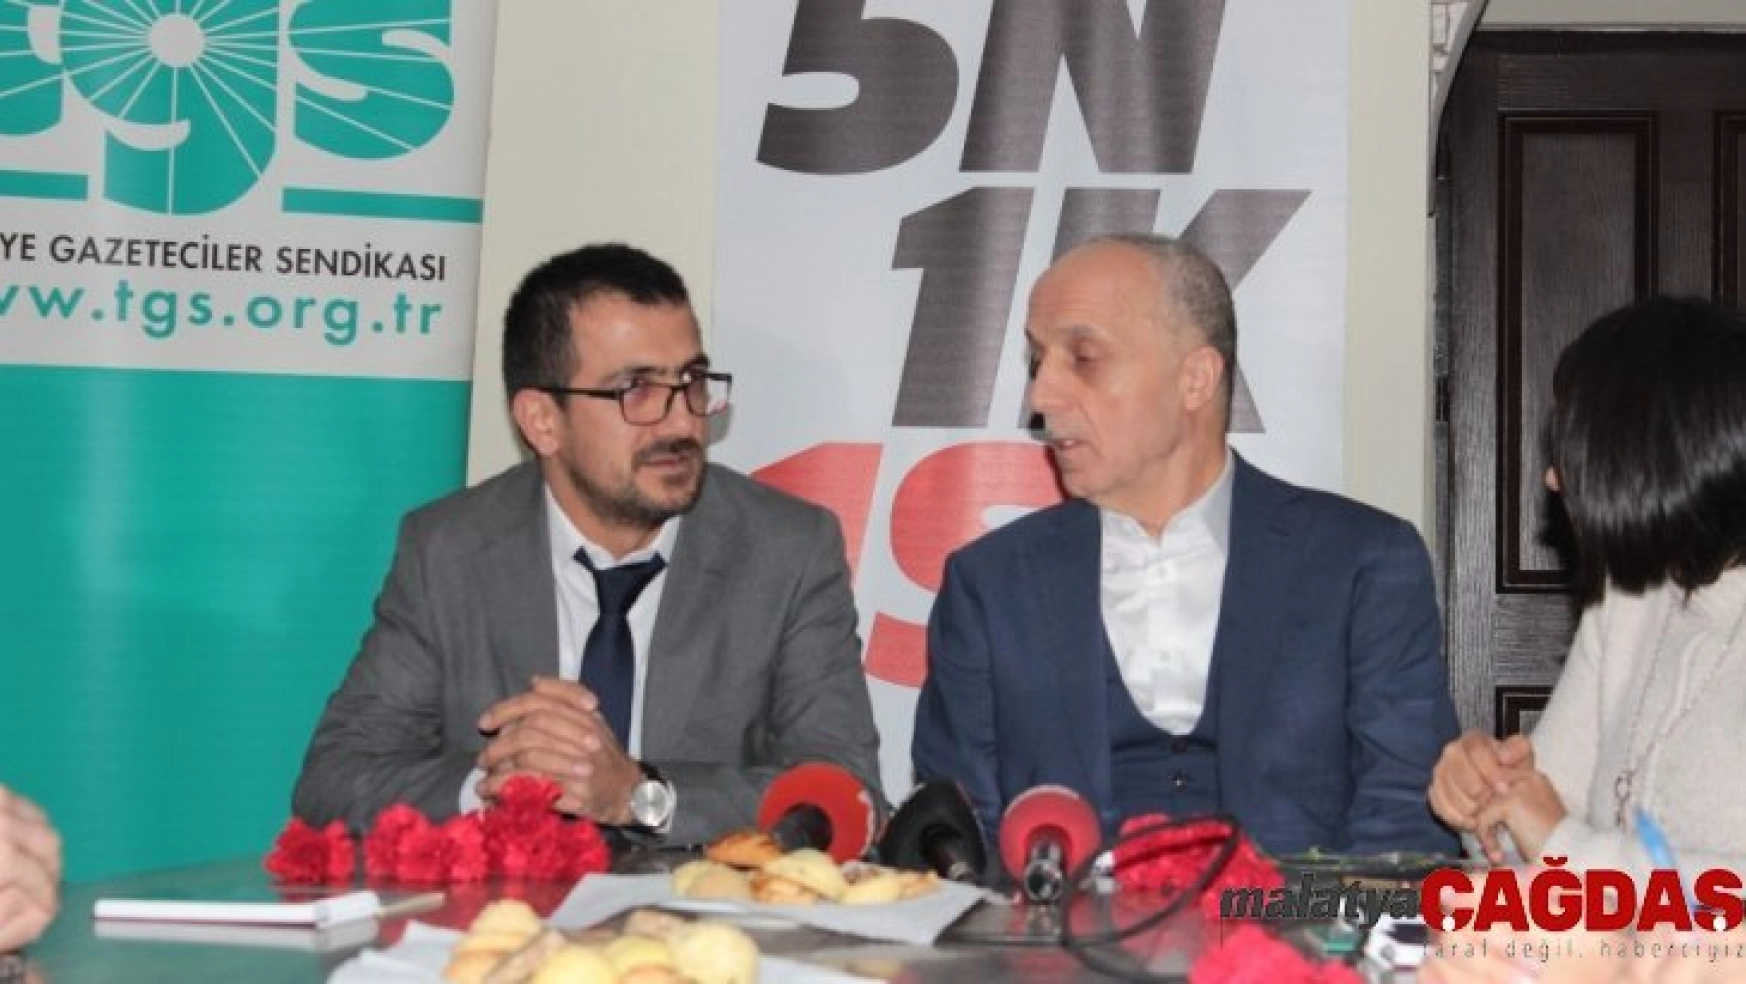 TÜRK-İŞ Konfederasyonu Başkanı Atalay: 'Bağımsız ve tarafsız gazetecilere dünyada olduğu gibi bizim de ihtiyacımız var'